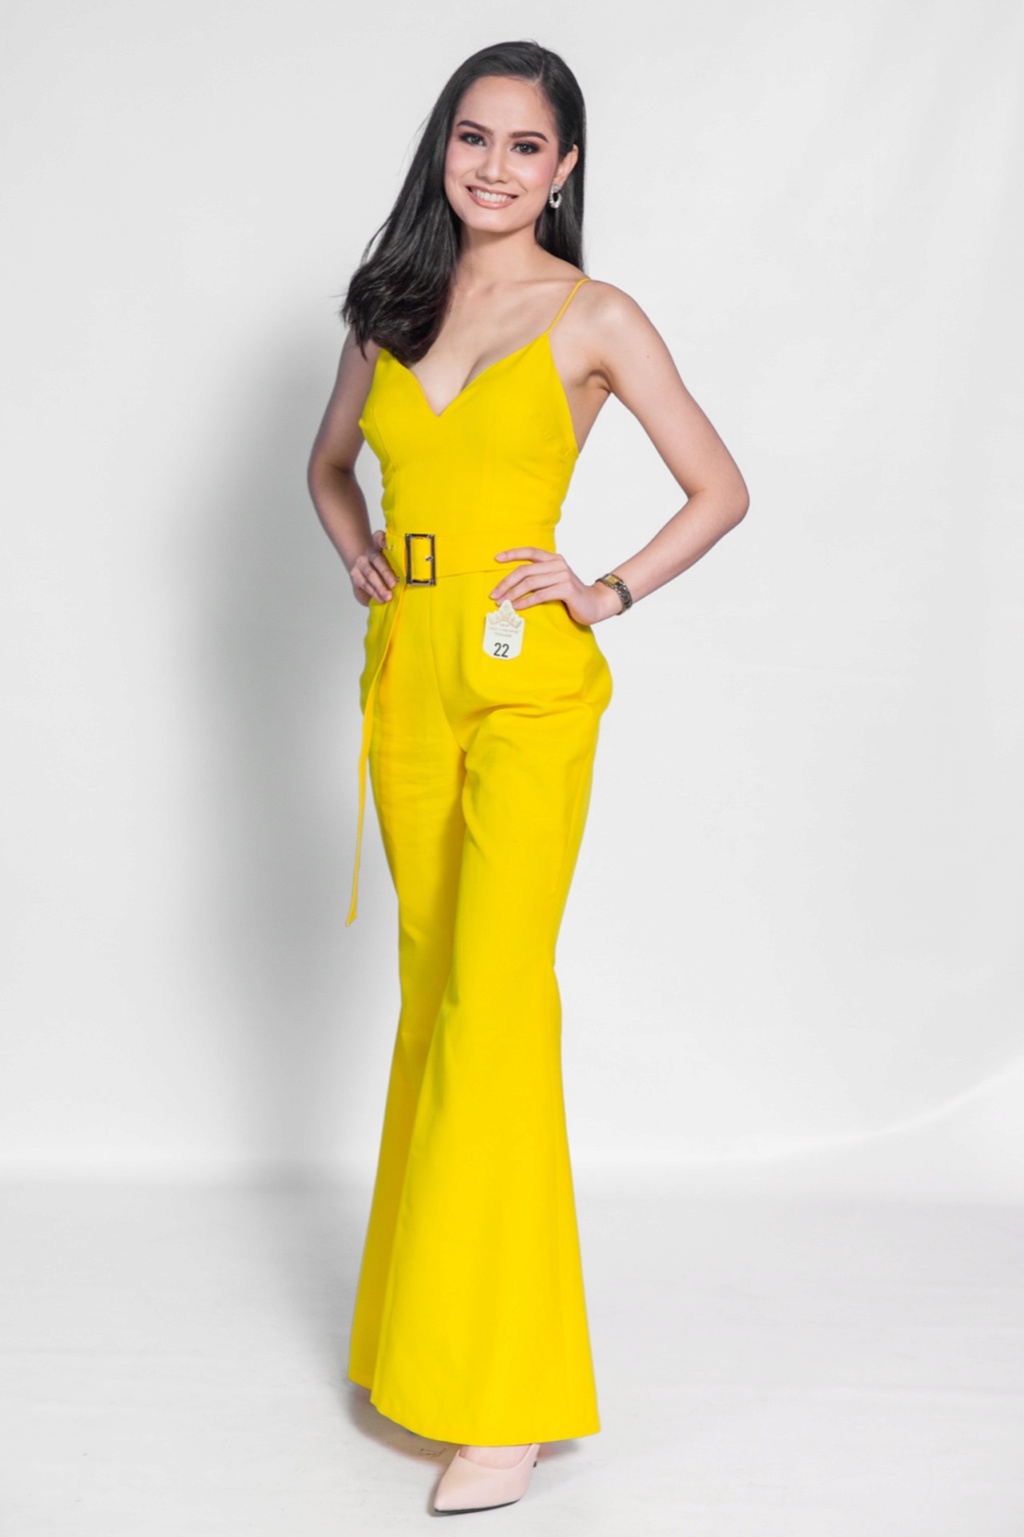 Miss Universe THAILAND 2019 - PORTRAITS!  - Page 2 5492